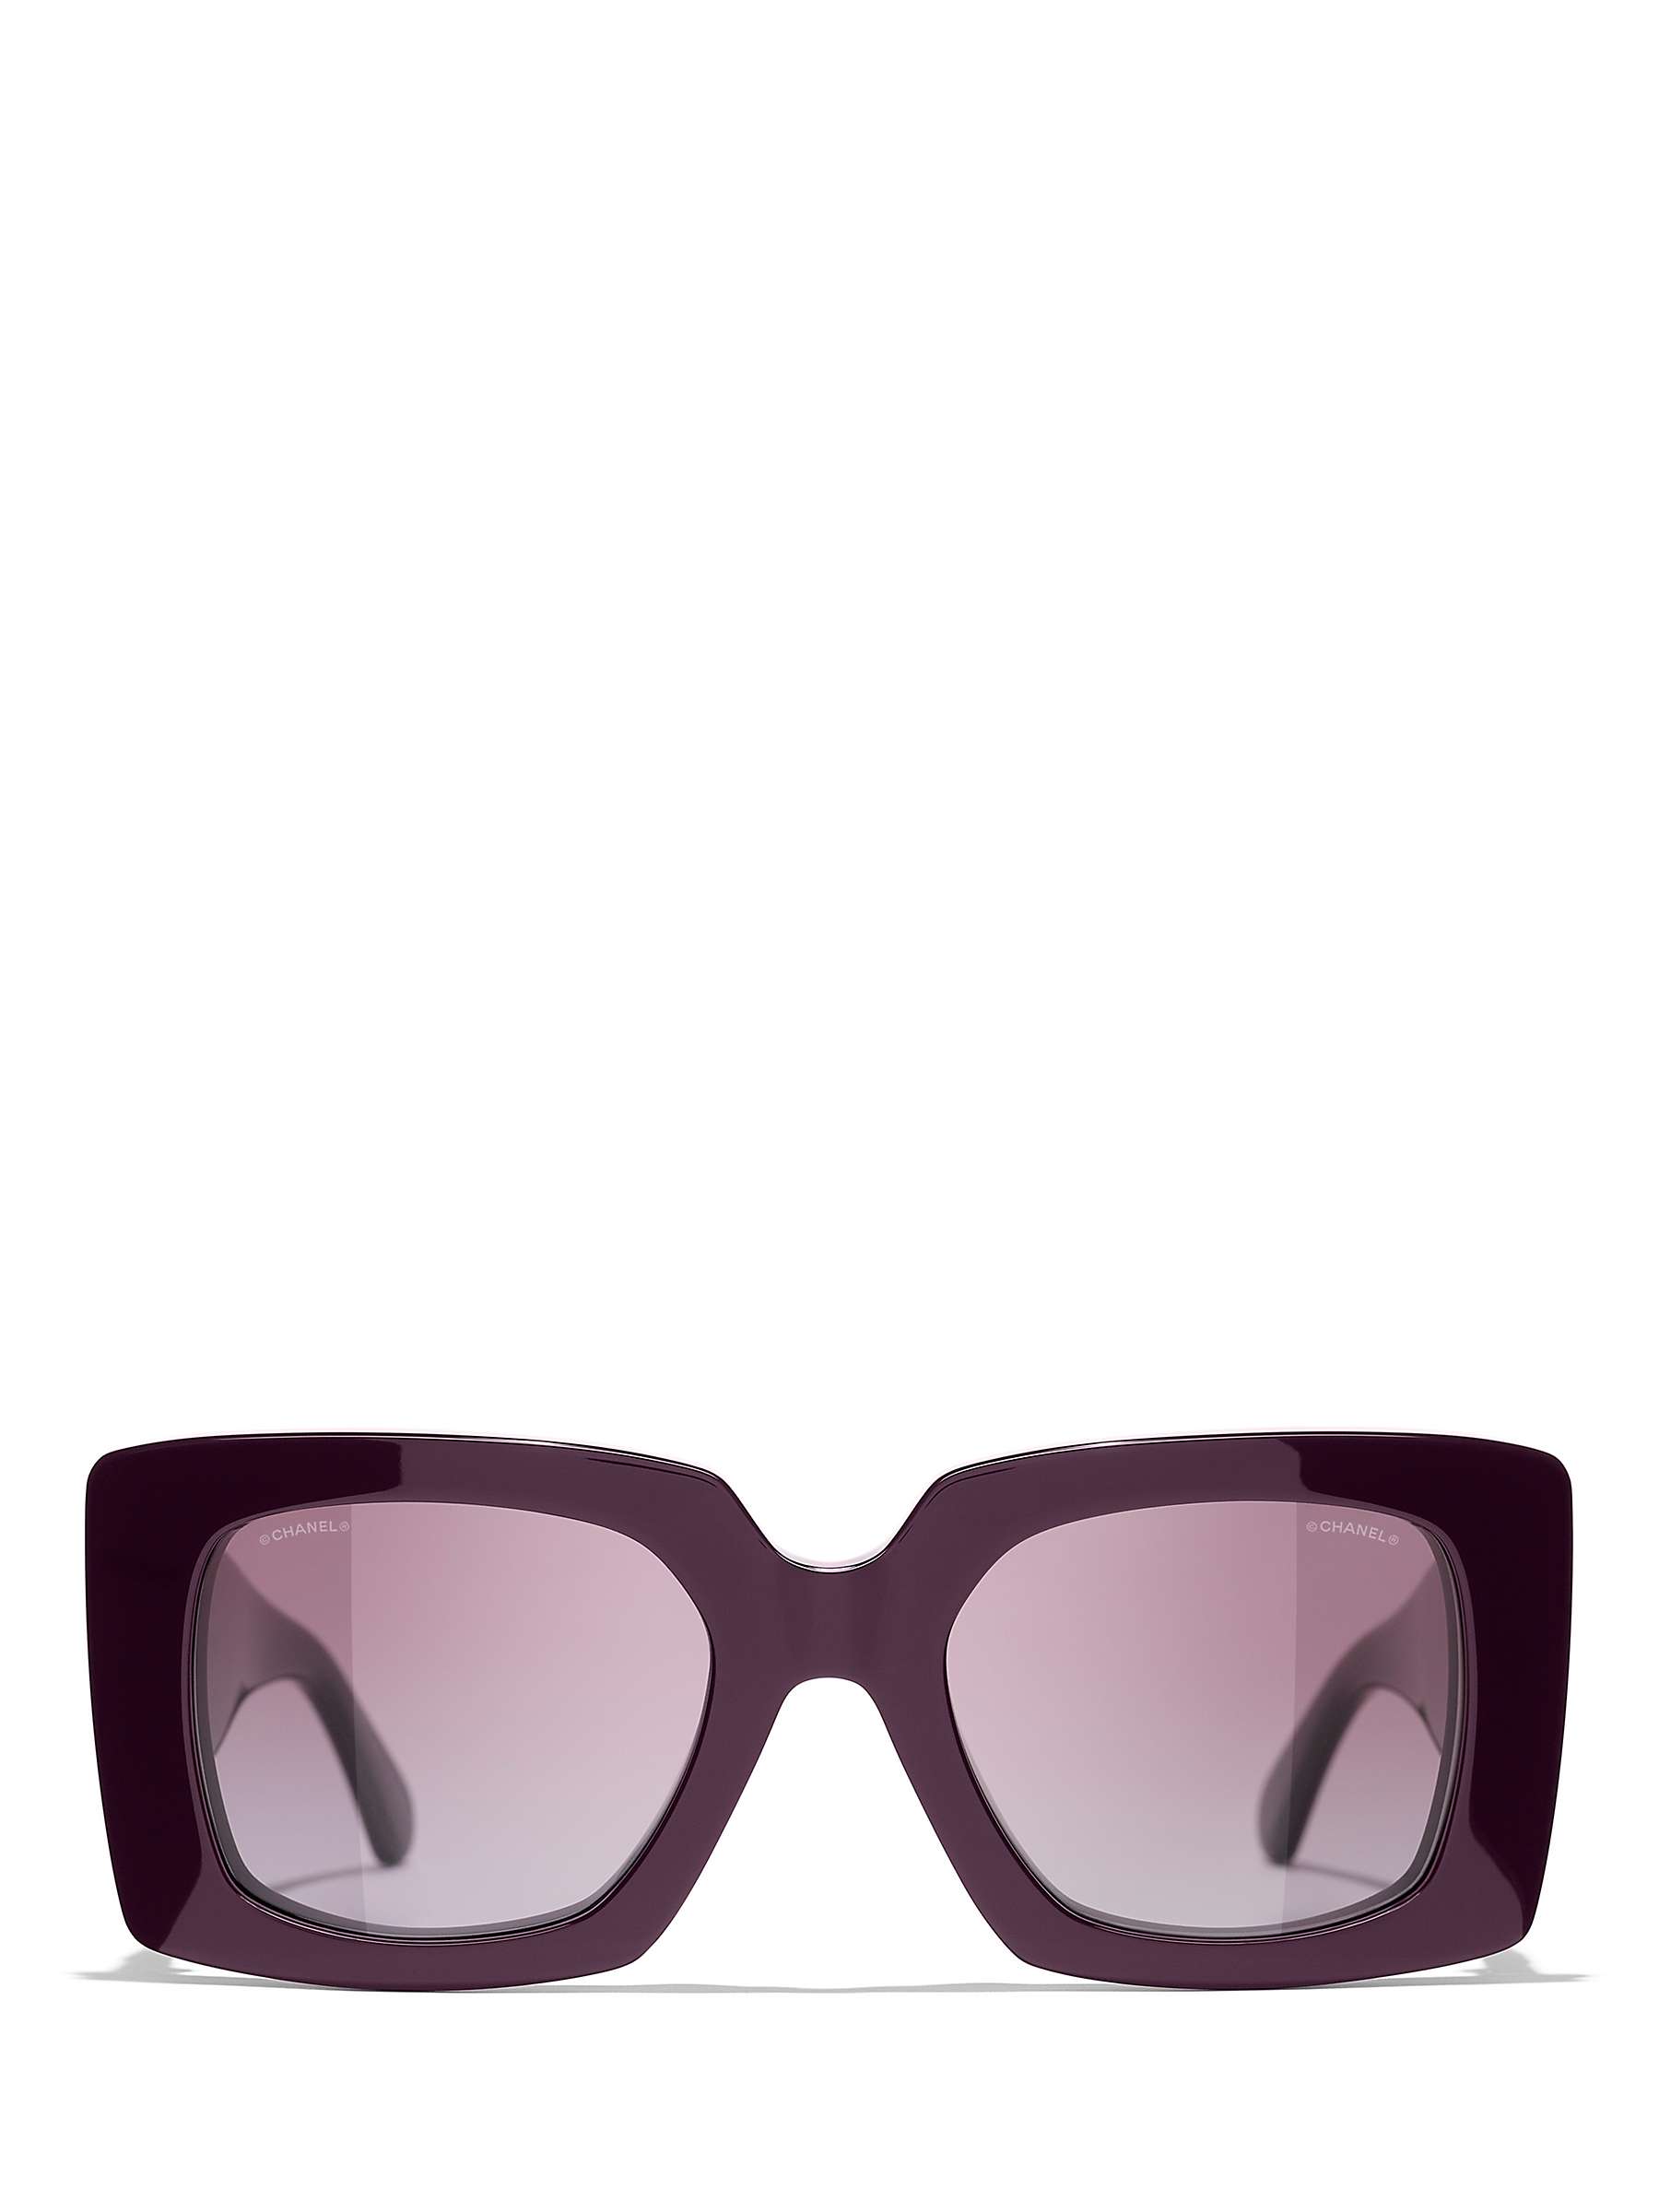 Buy CHANEL Rectangular Sunglasses CH5480H Bordeaux/Violet Gradient Online at johnlewis.com